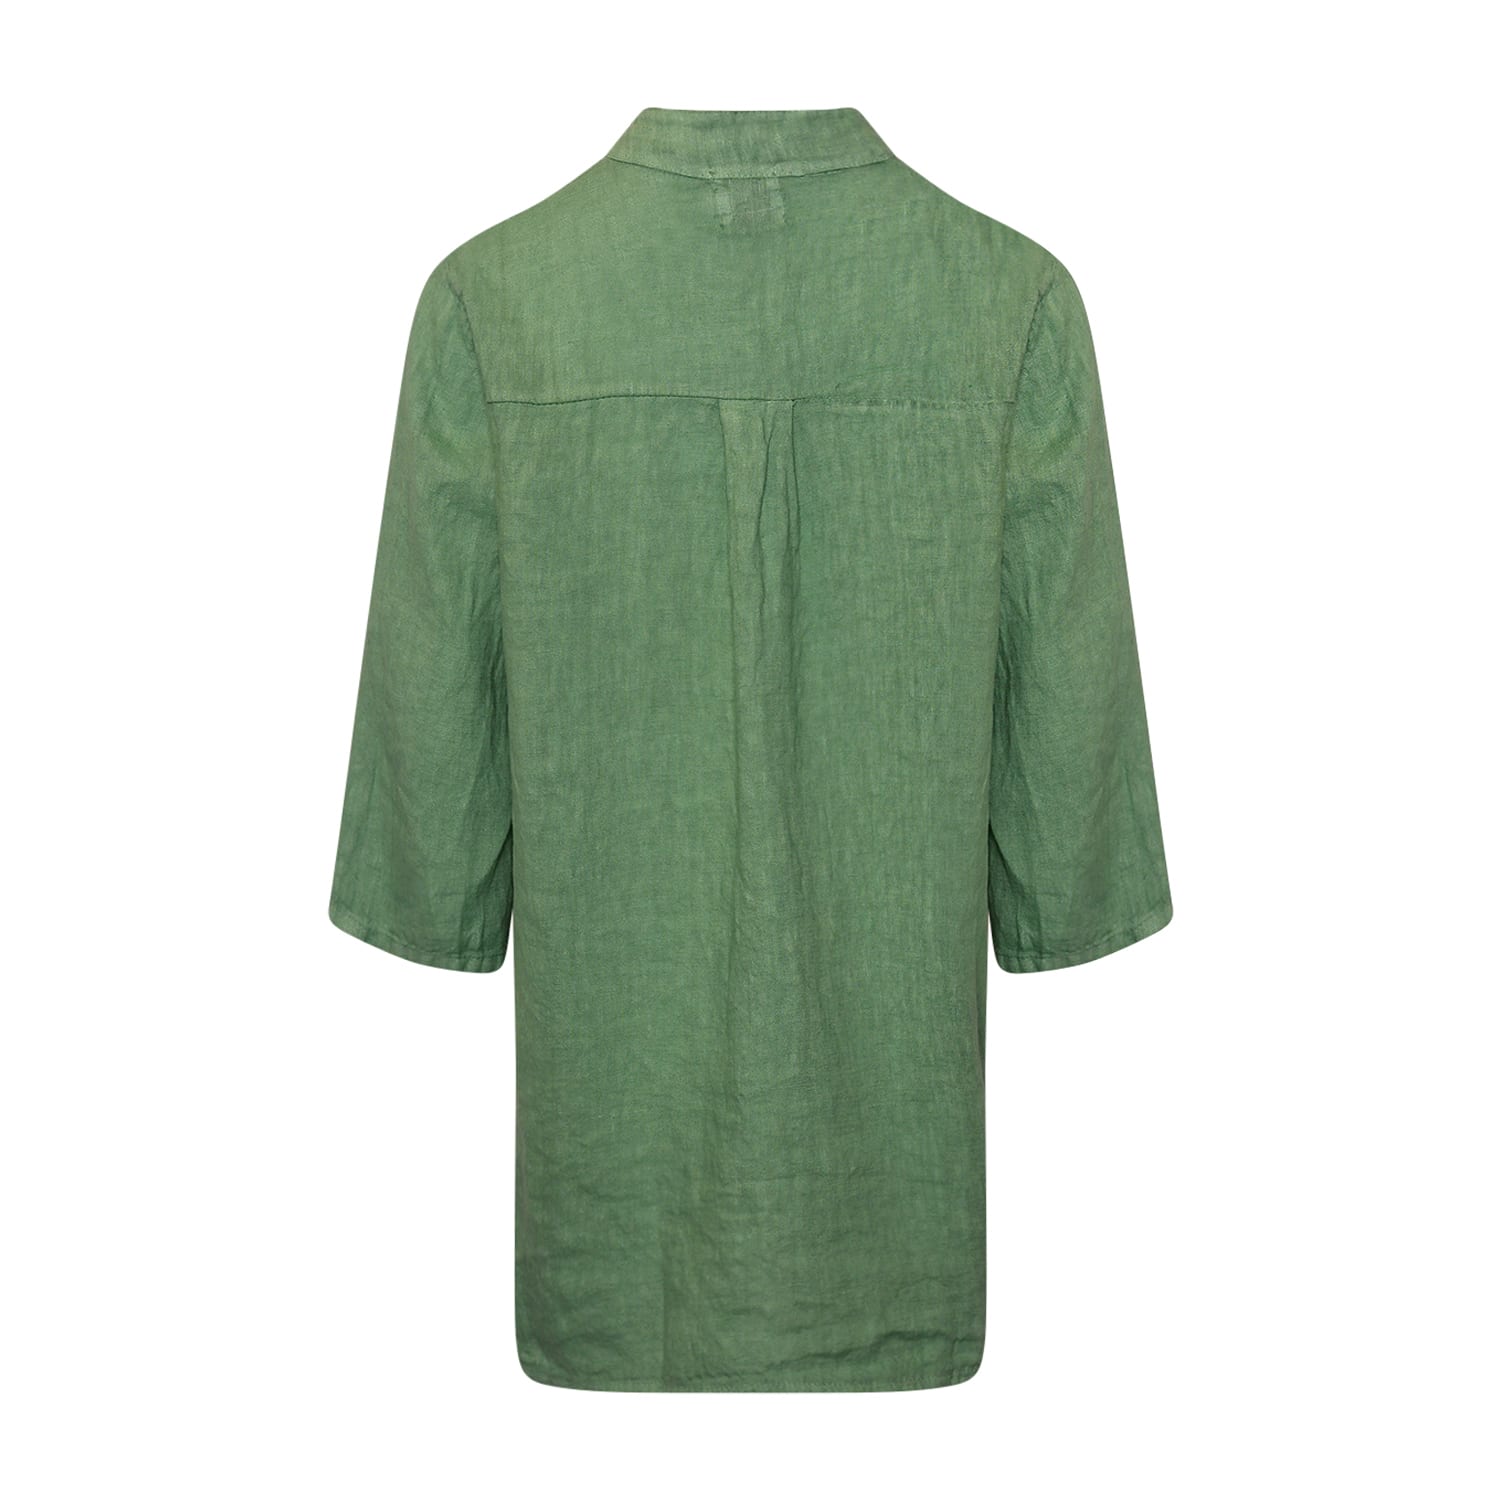 17661, Shirt, Linen - Dusty Mint